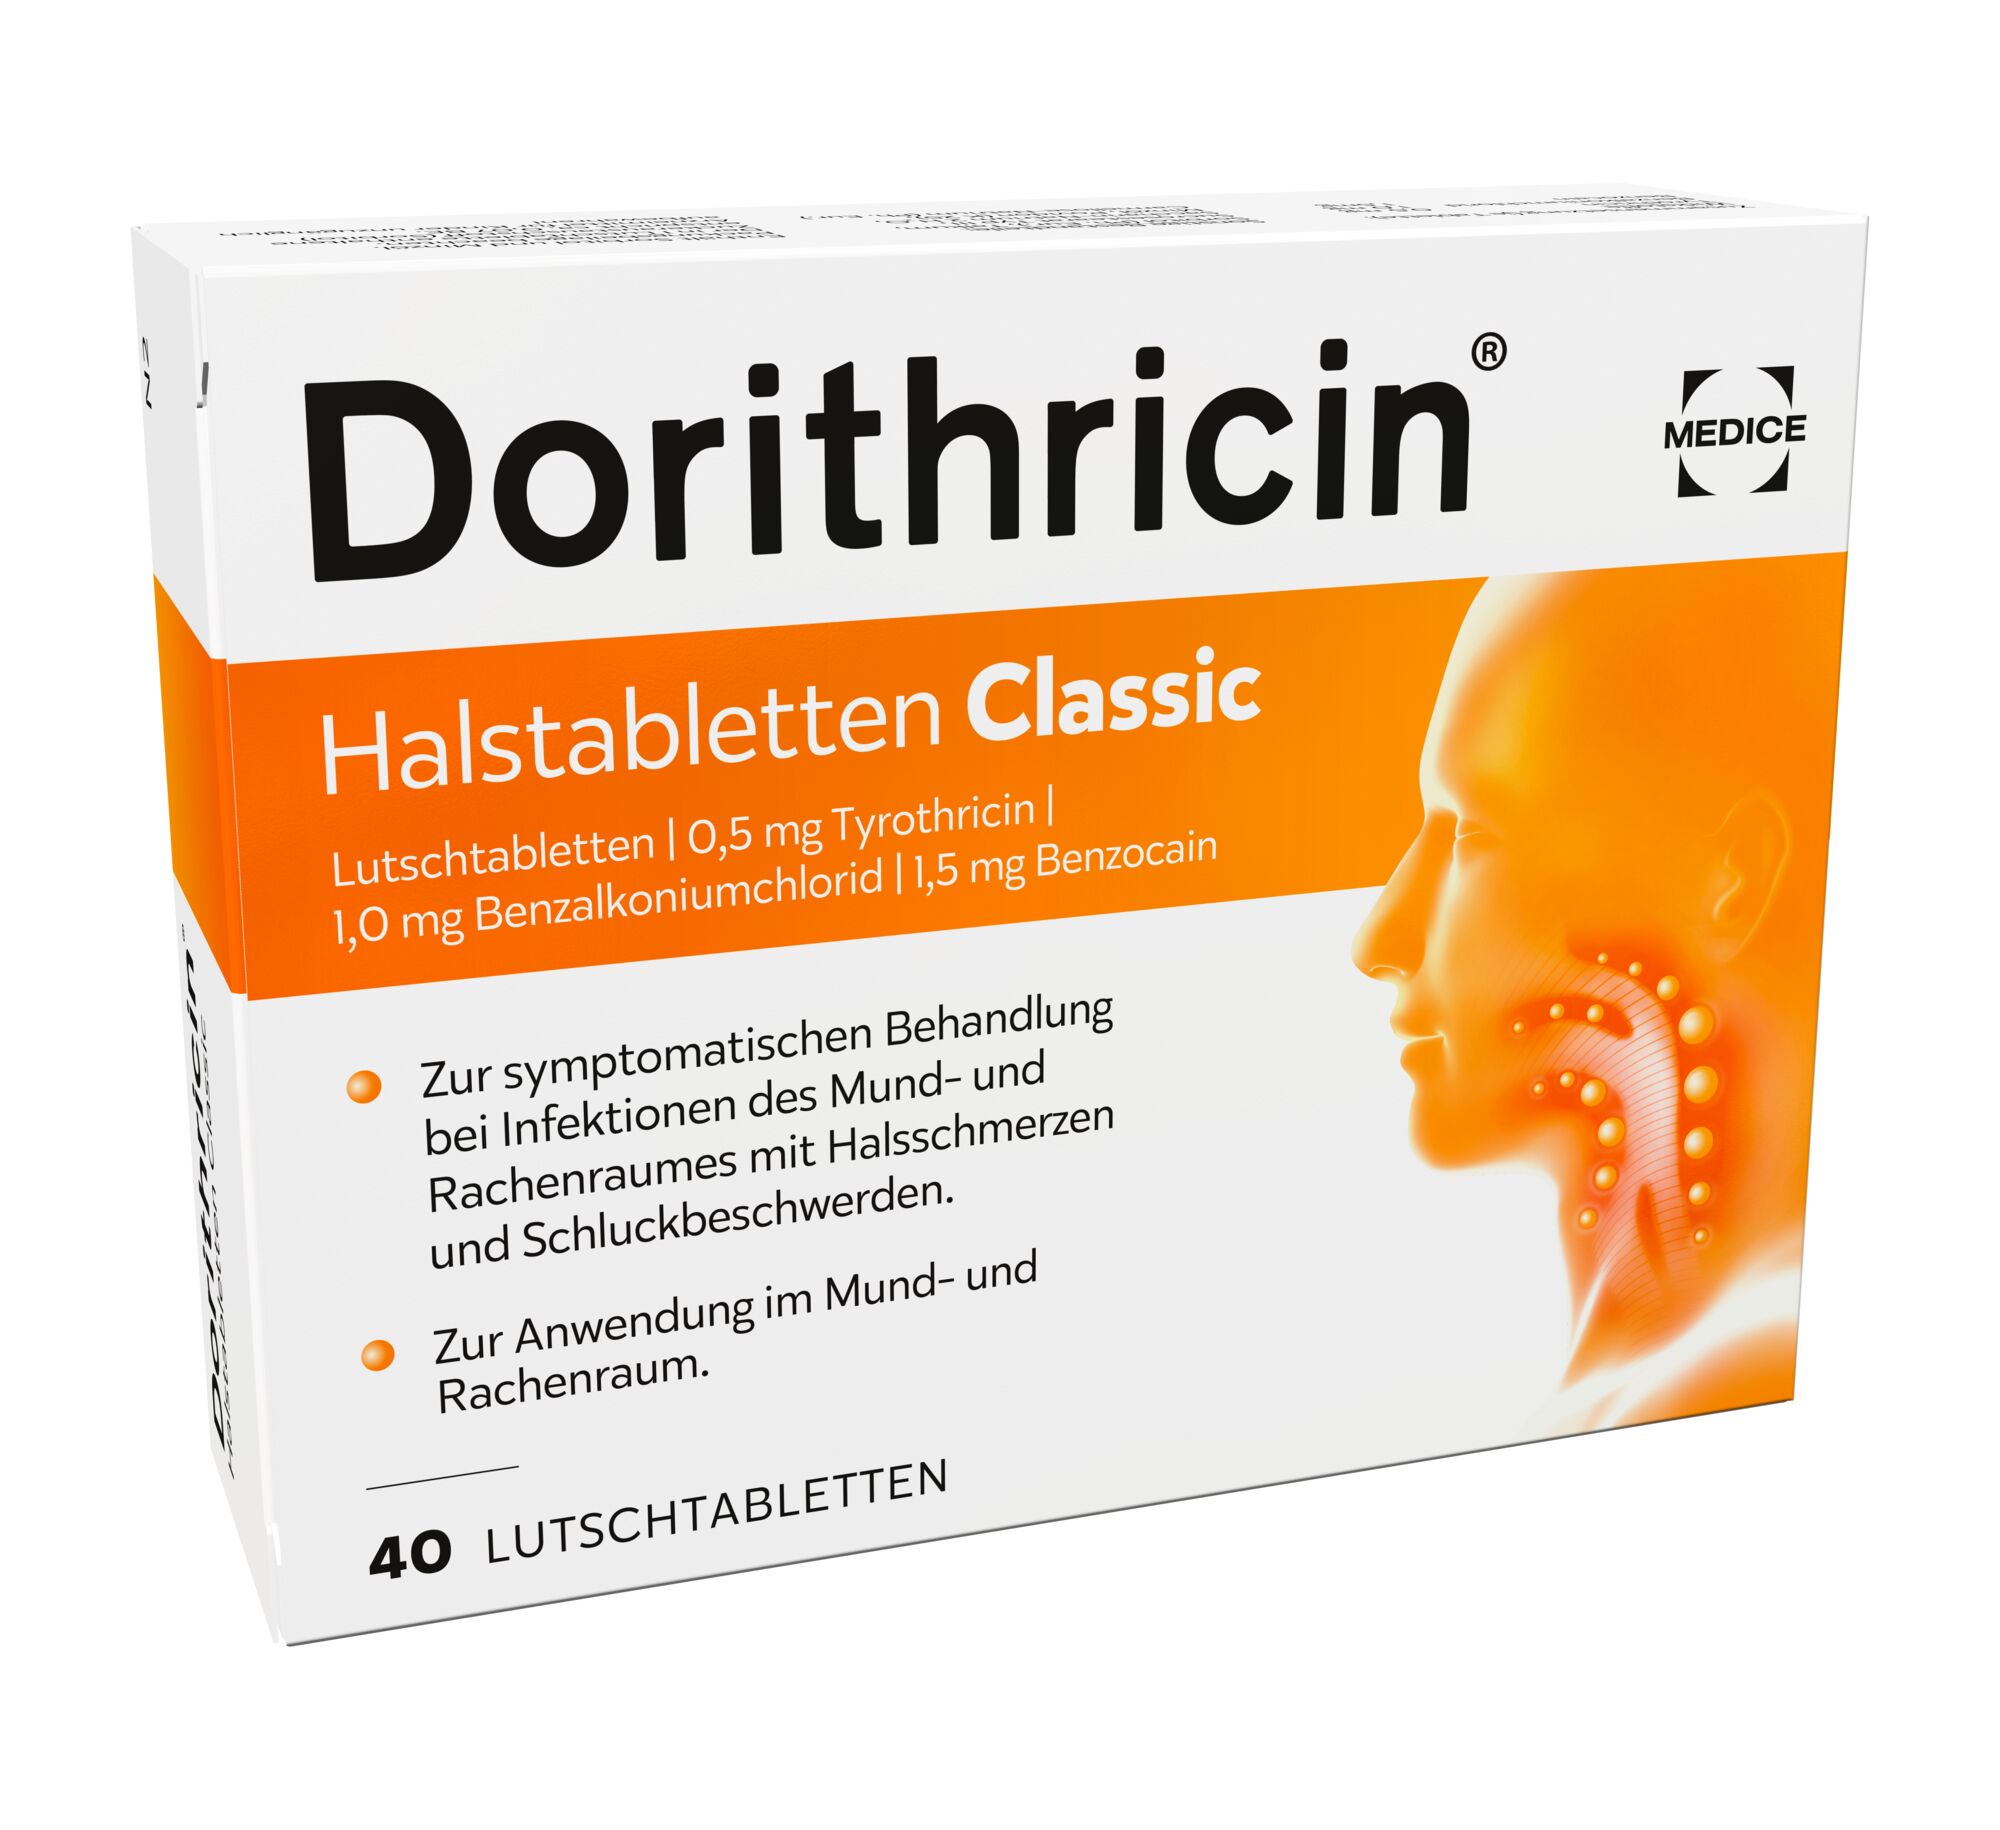 Dorithricin Halstabletten Classic (40 Stk)